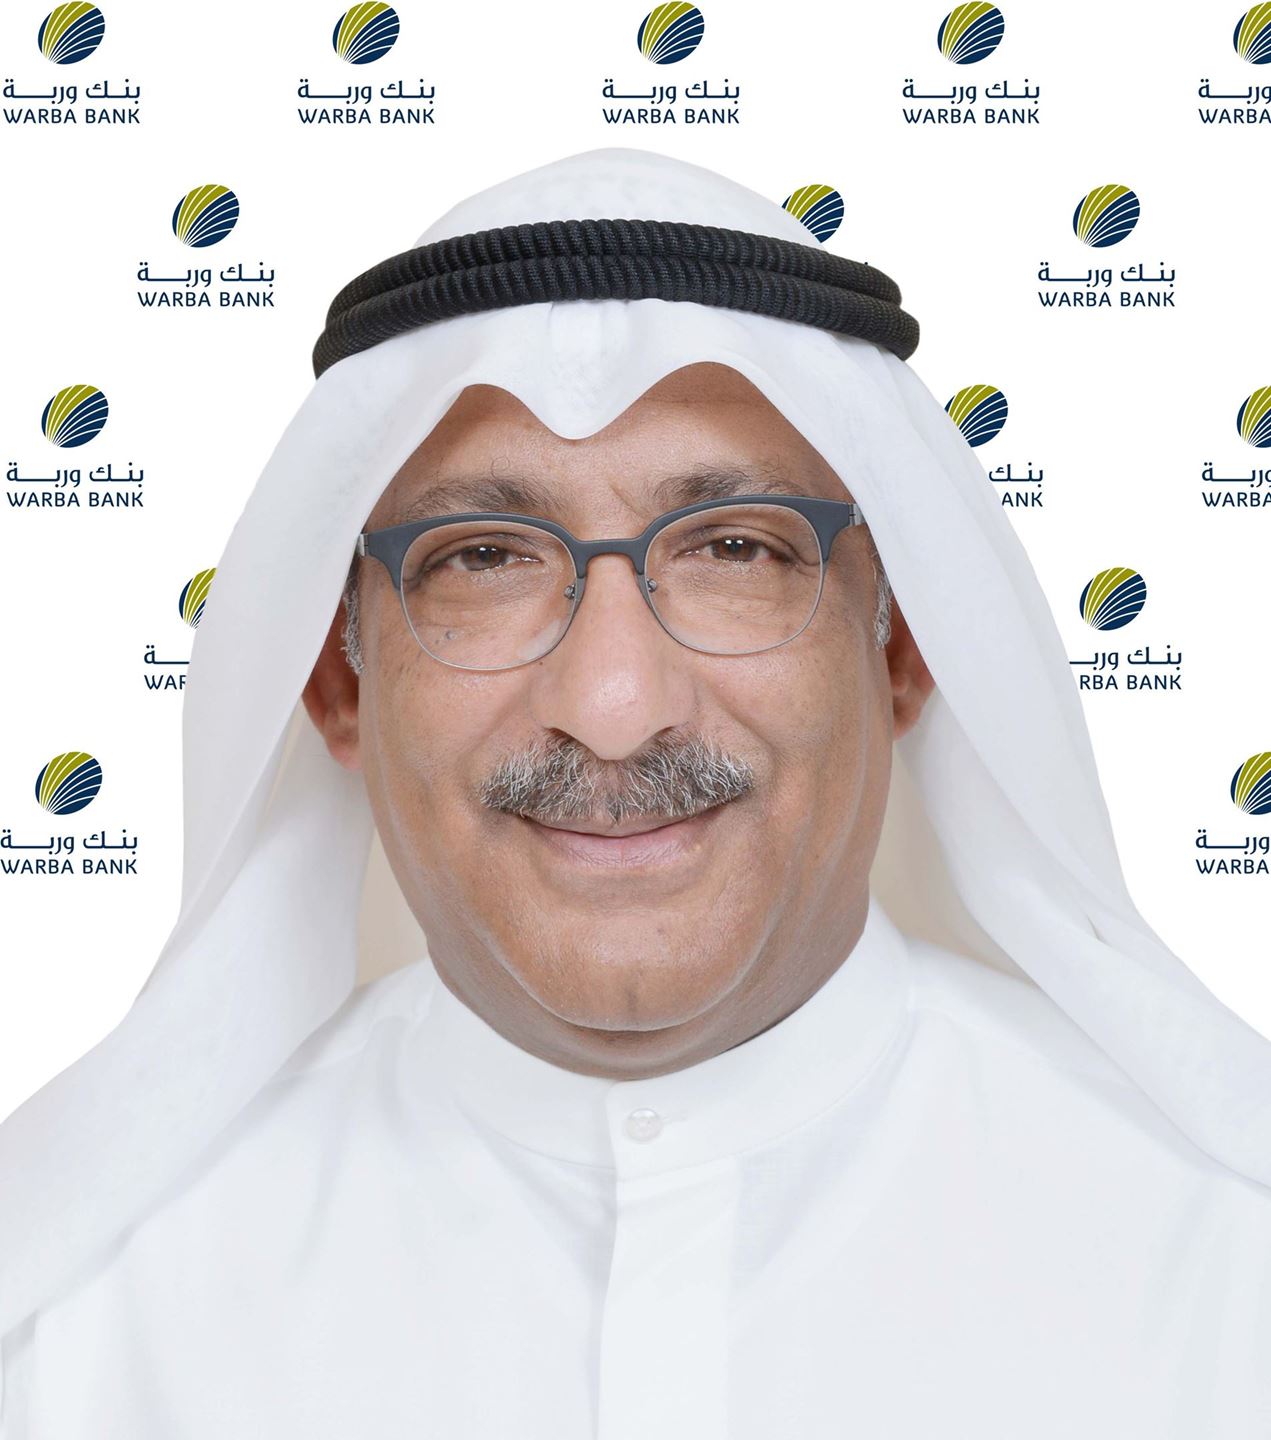 السيد هيثم عبدالعزيز التركيت - رئيس مجموعة تكنولوجيا المعلومات في بنك وربة